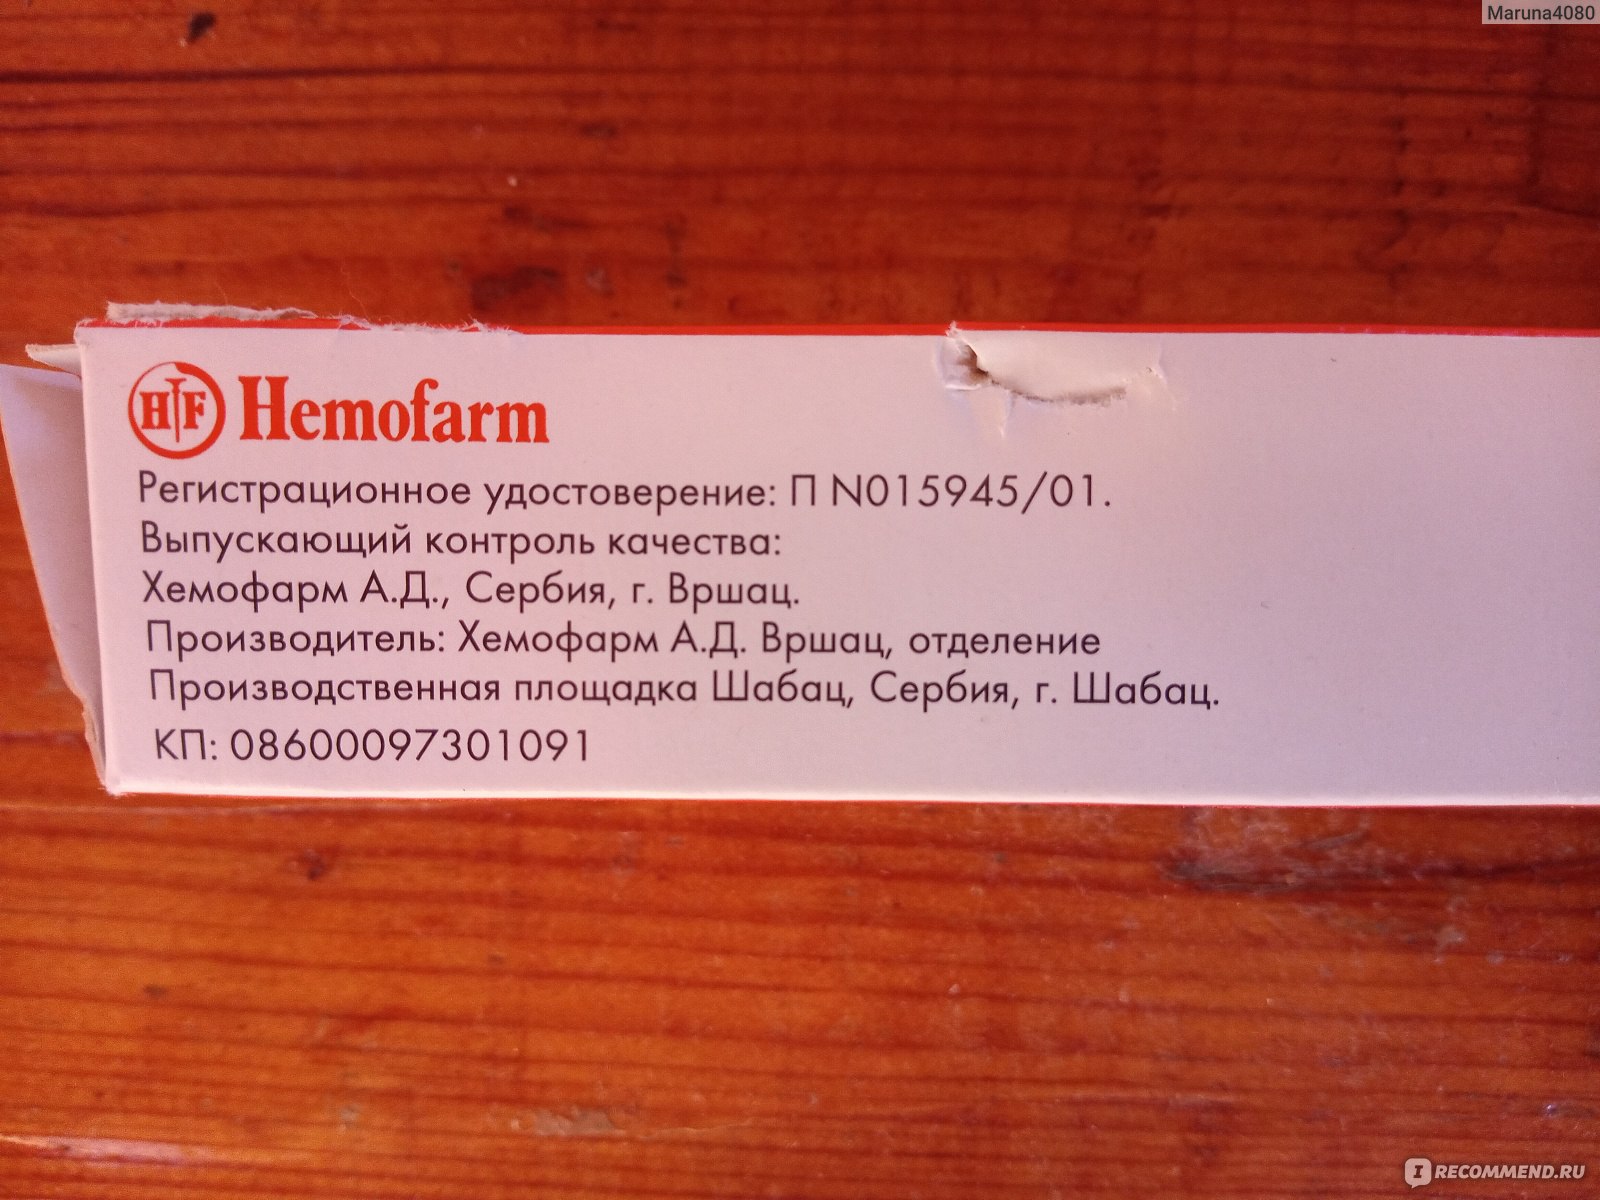 Мазь для ректального и наружного применения "Hemofarm" "Гепатромбин Г" фото